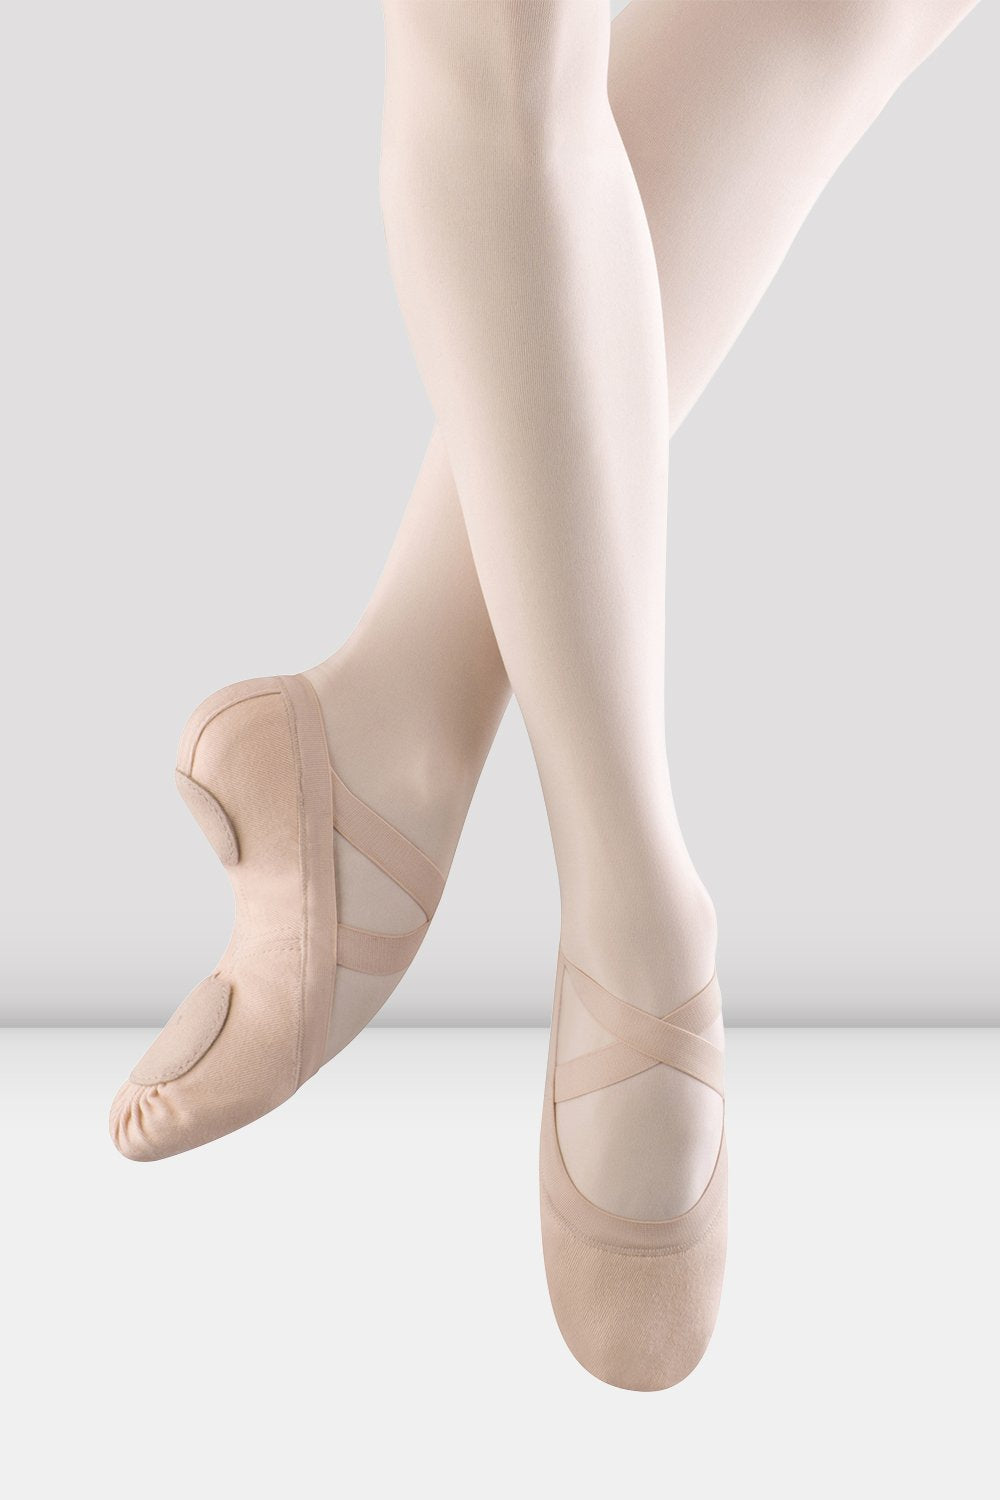 bloch ballet shoes girls